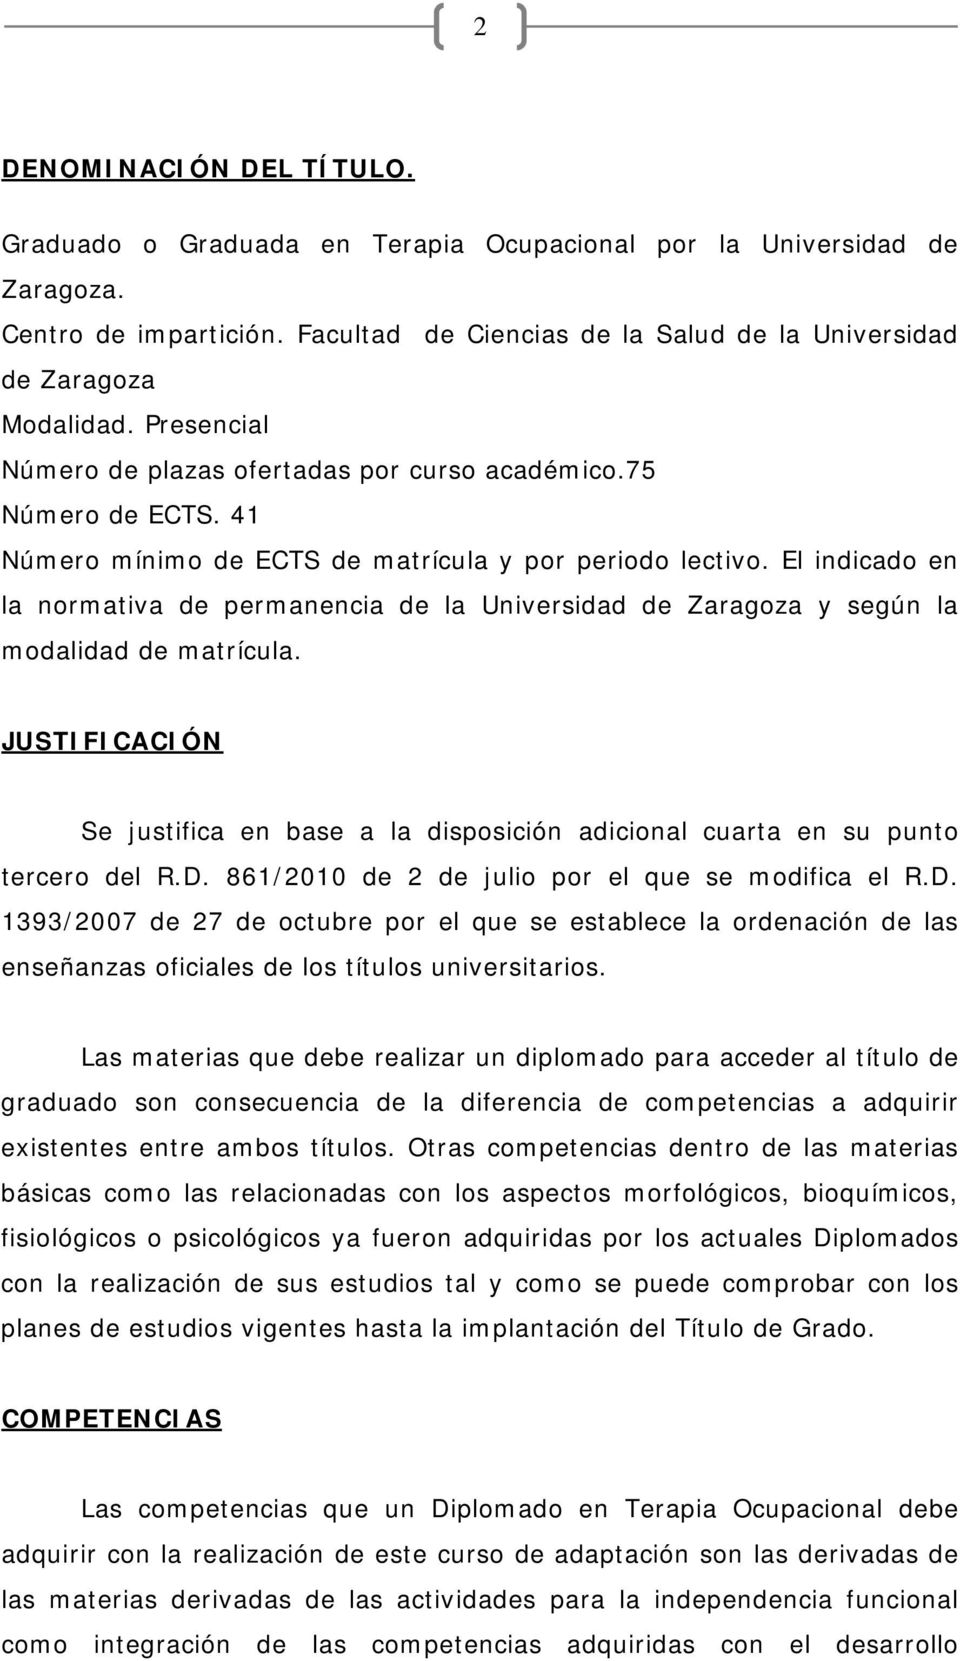 El indicado en la normativa de permanencia de la Universidad de Zaragoza y según la modalidad de matrícula.